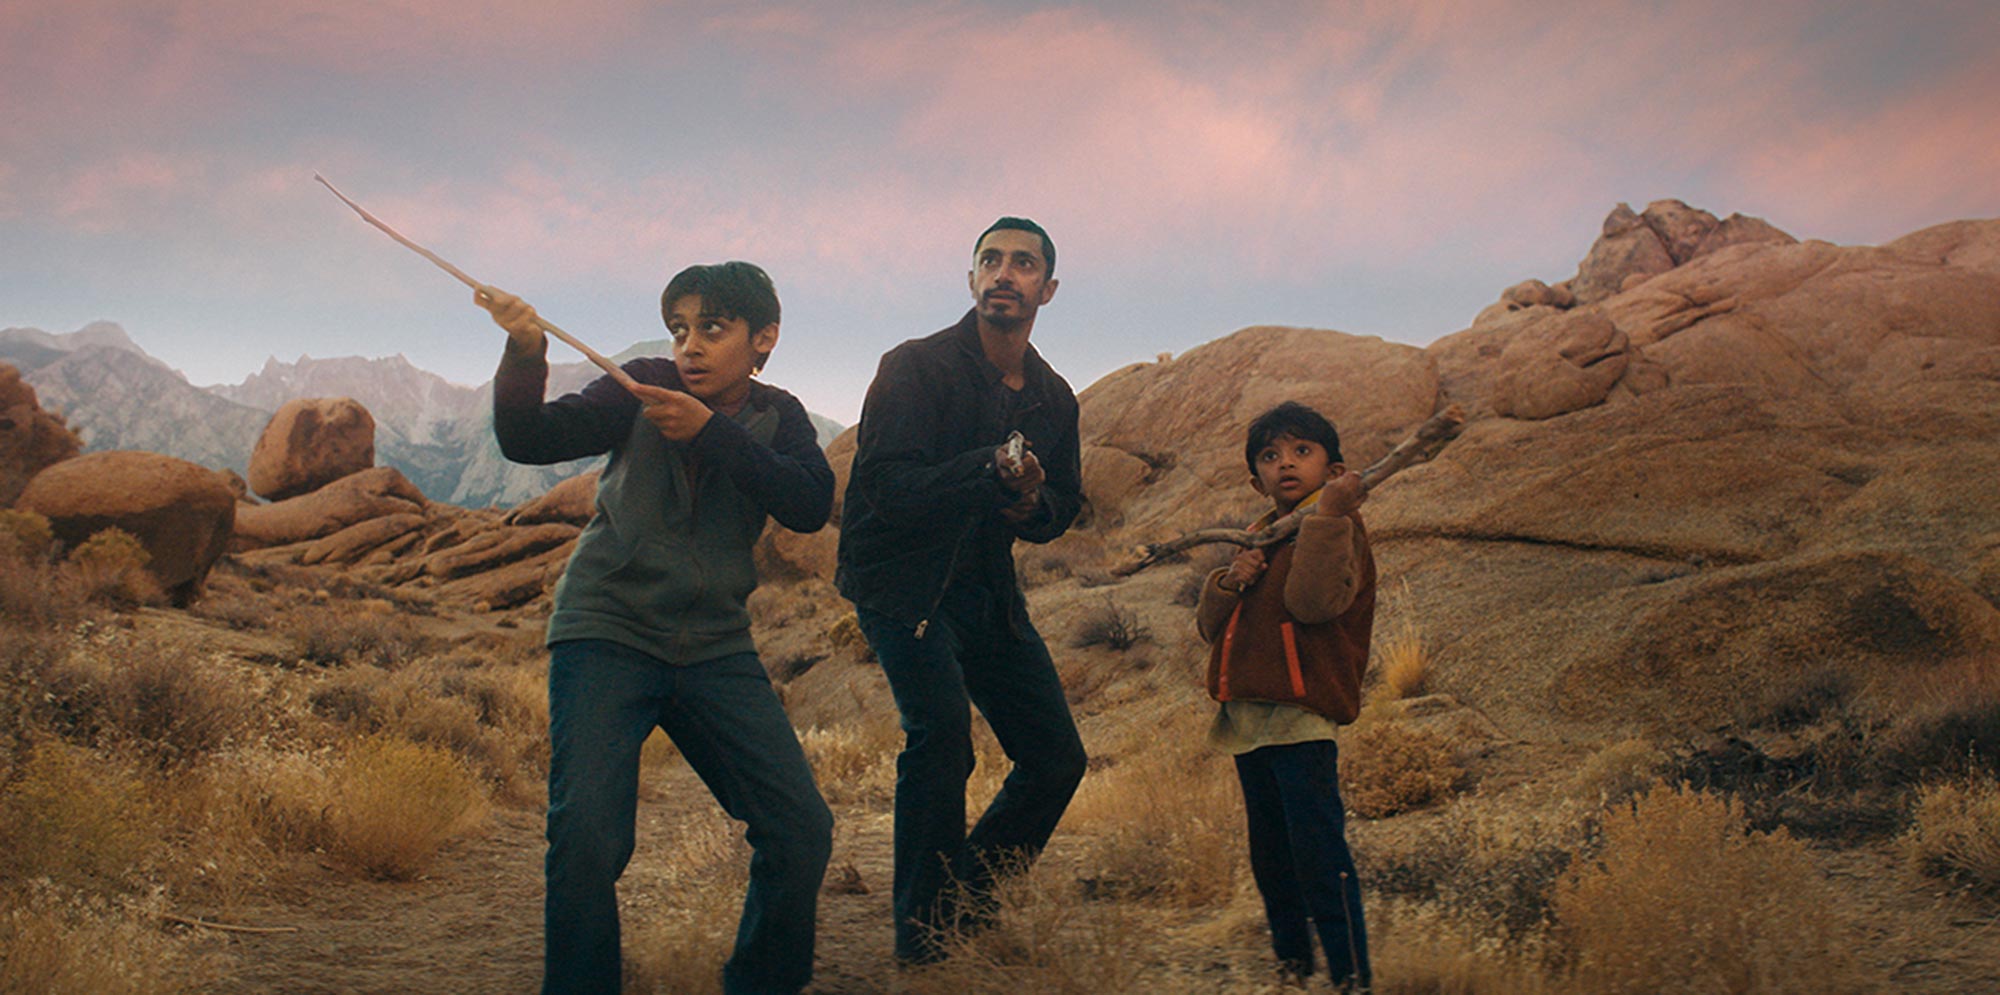 Риз Ахмед защищает сыновей в первом тизере фильма «Схватка»